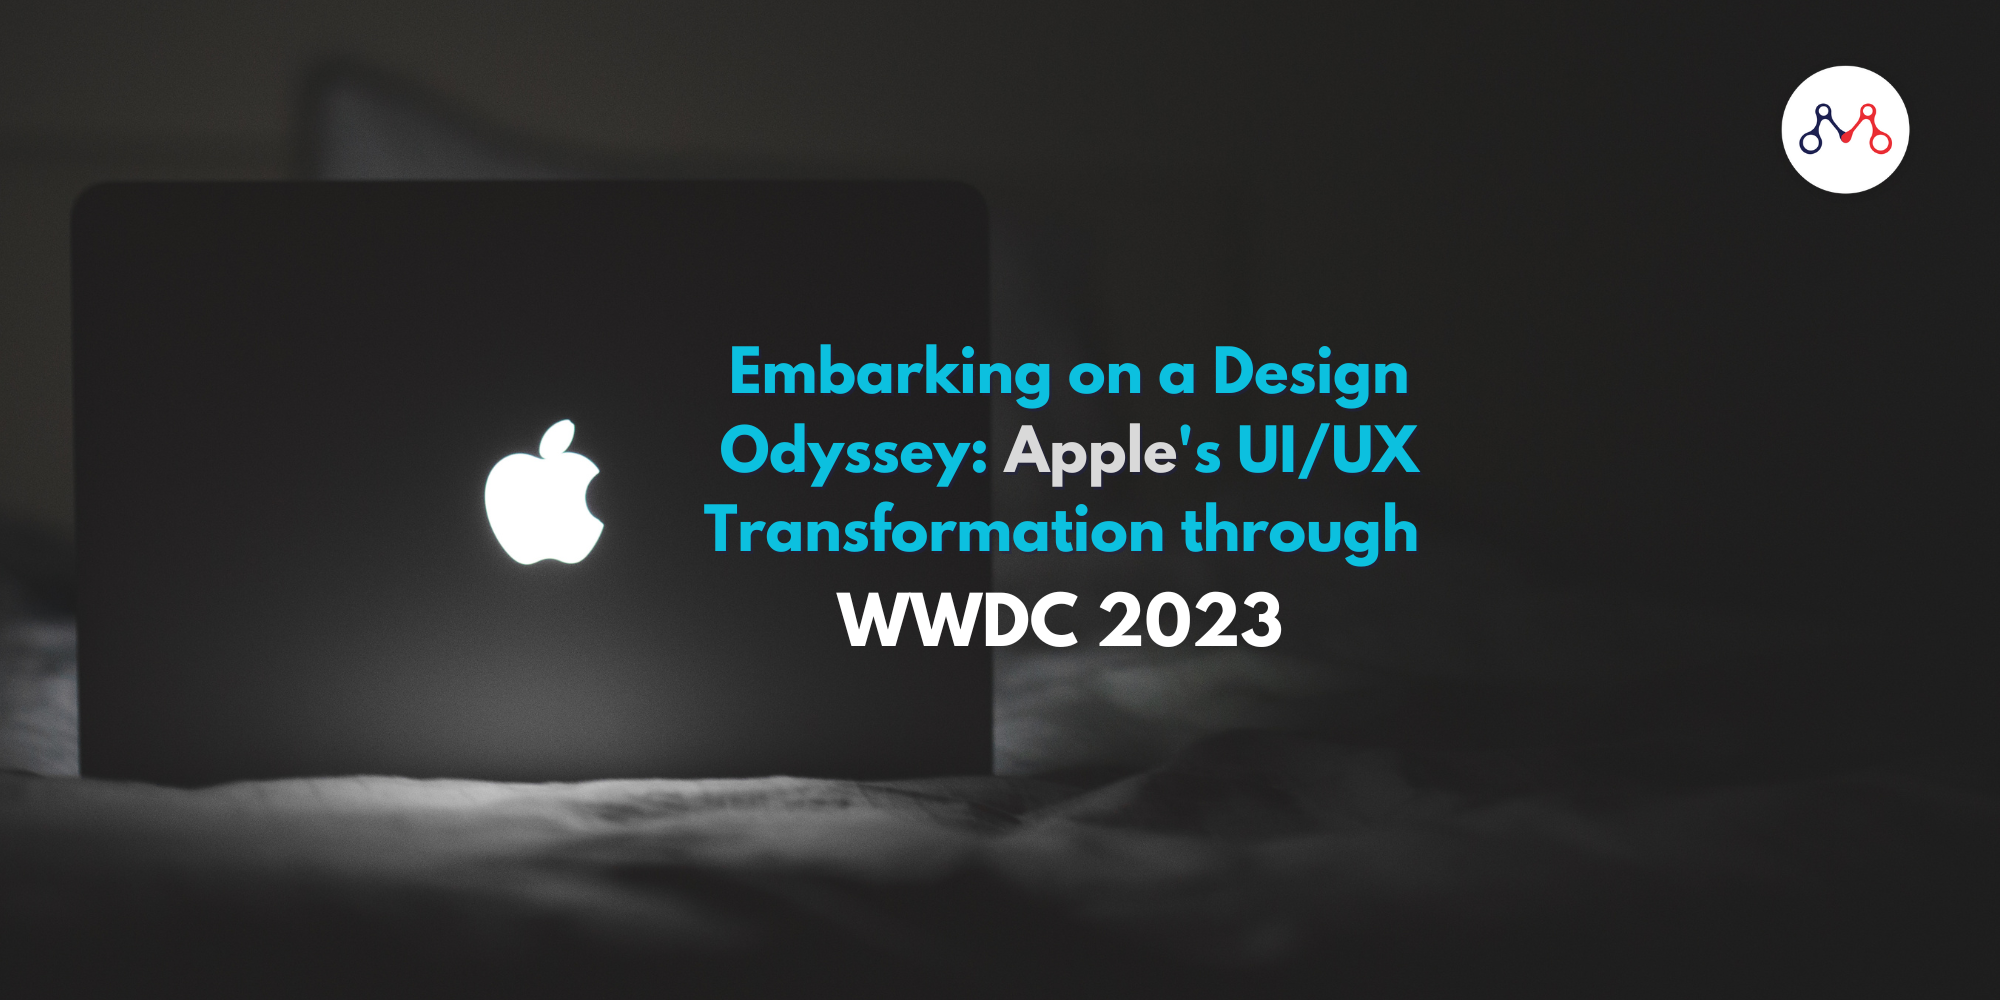 Отправляясь в дизайнерскую одиссею: трансформация UI/UX Apple на WWDC 2023